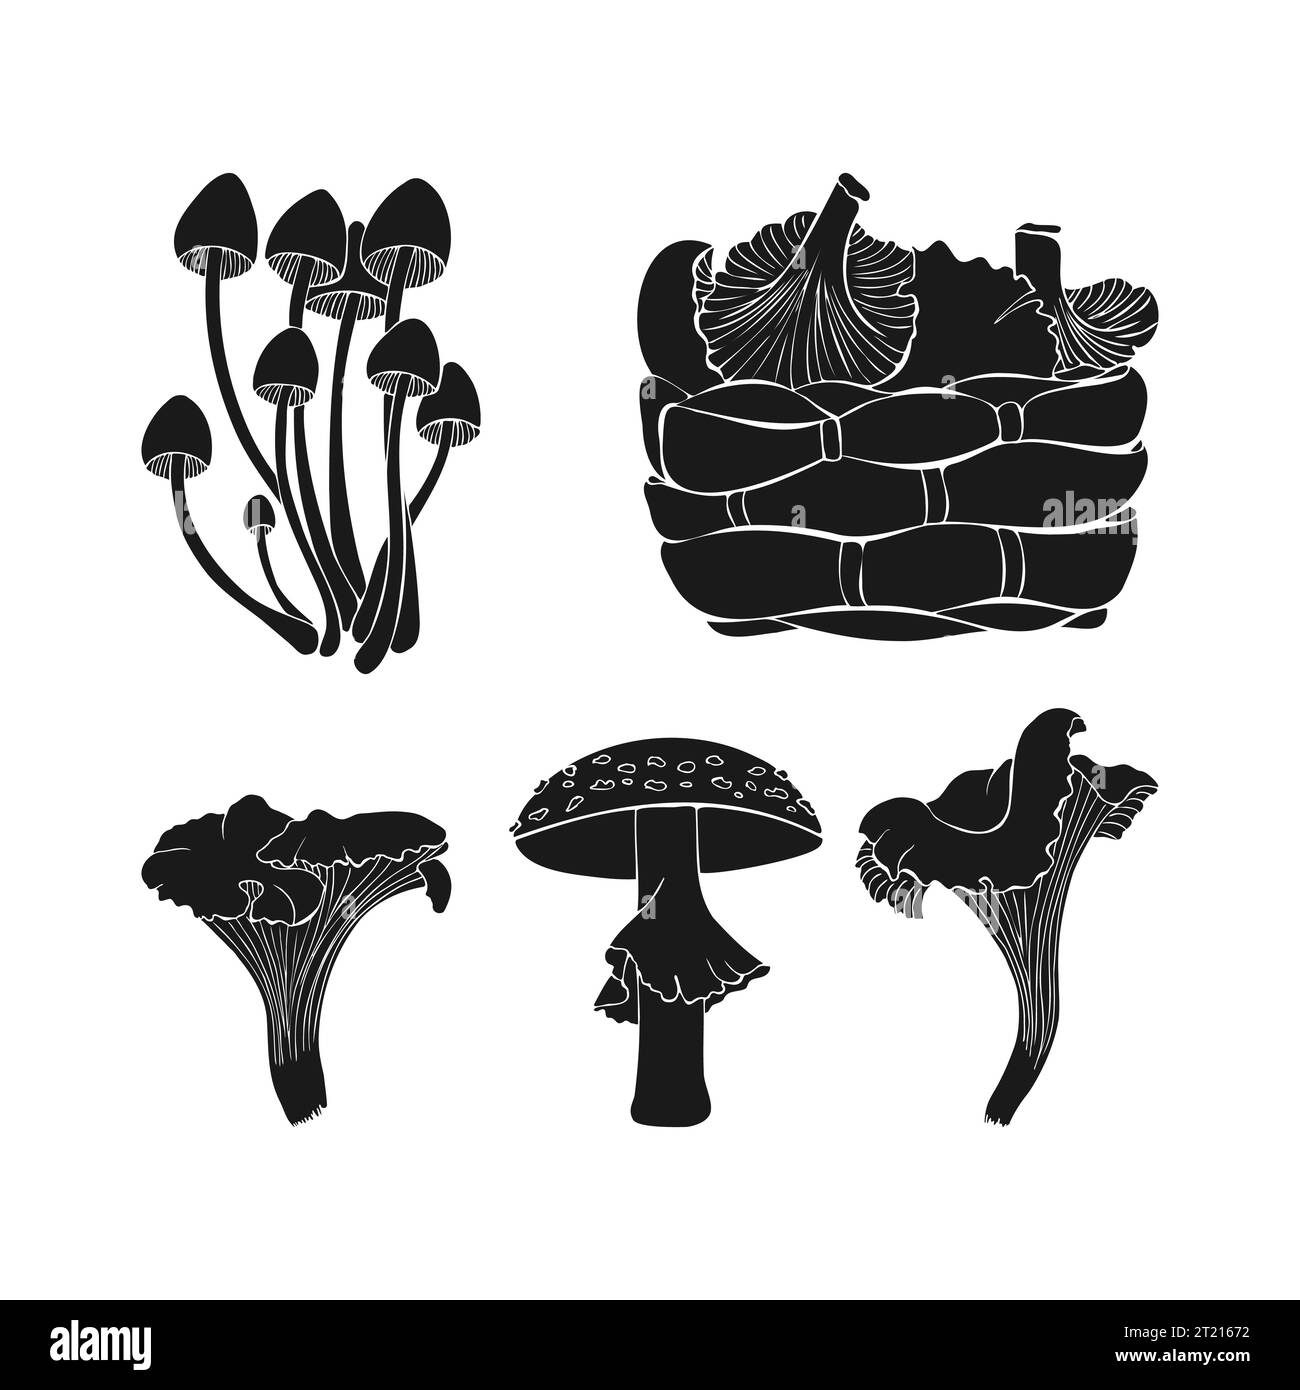 Définissez la silhouette des champignons. Icônes sombres monochromes. Champignons noirs sur fond blanc. Illustration vectorielle Illustration de Vecteur